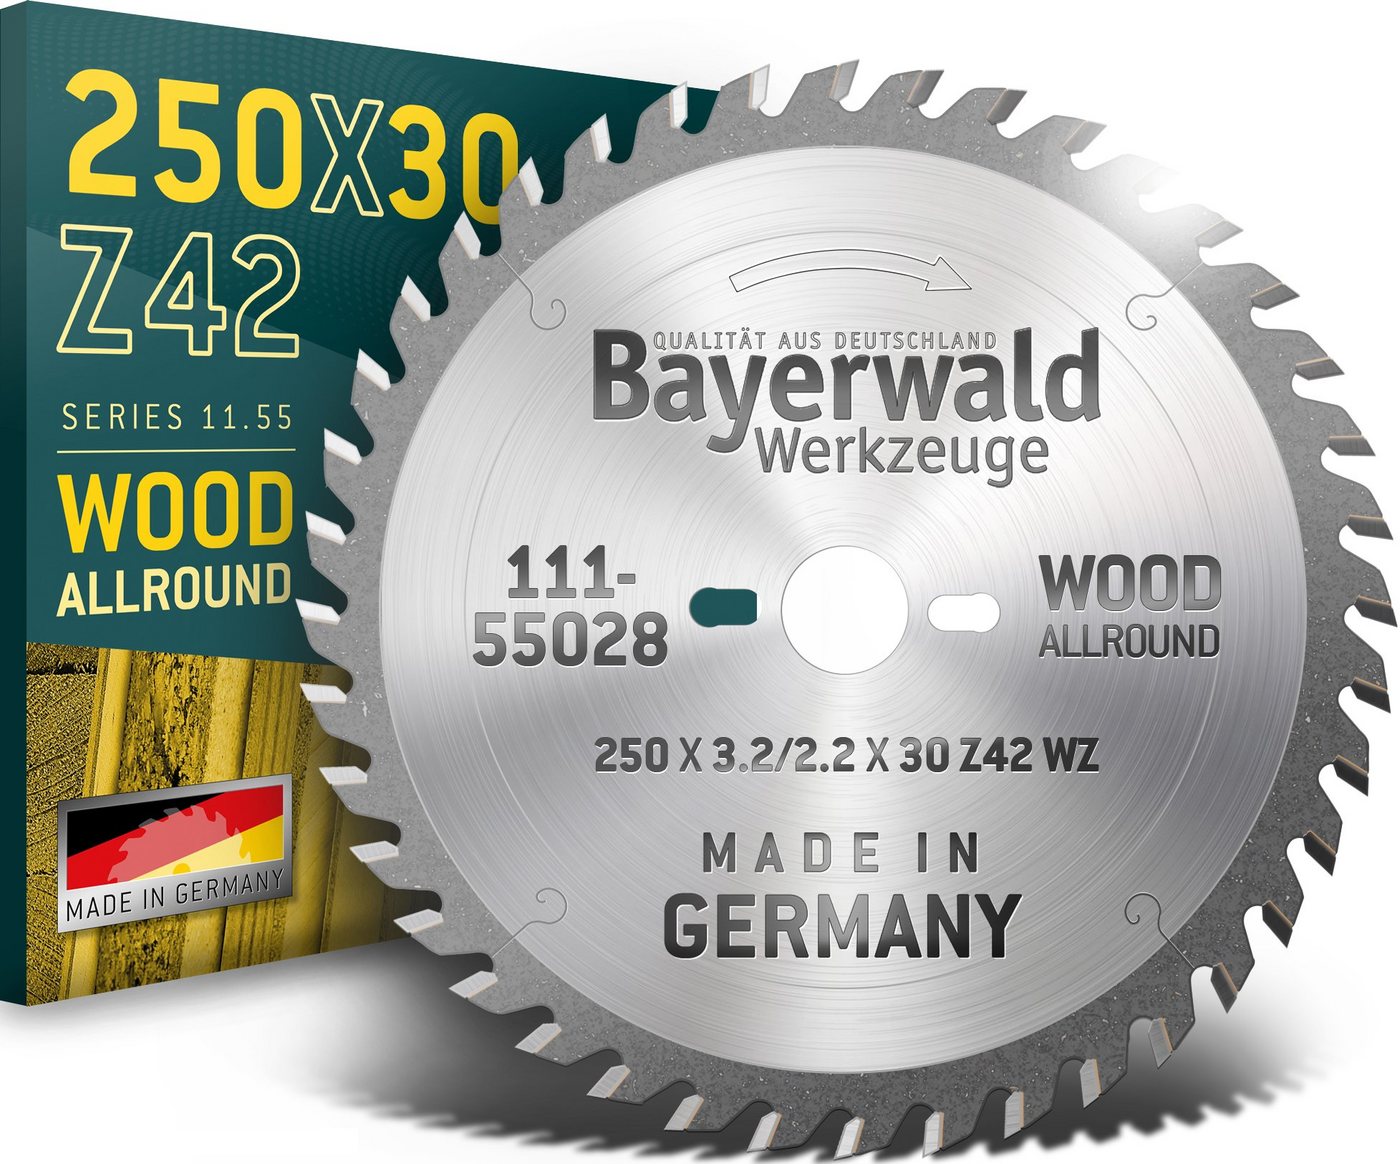 QUALITÄT AUS DEUTSCHLAND Bayerwald Werkzeuge Kreissägeblatt HM Kreissägeblatt - 250 x 3.2/2.2 x 30 Z42 WZ UW, 30 mm (Bohrung) WZ (Zahnform) positiv (Zahnstellung) 2, 9, 462, 10, 60 von QUALITÄT AUS DEUTSCHLAND Bayerwald Werkzeuge